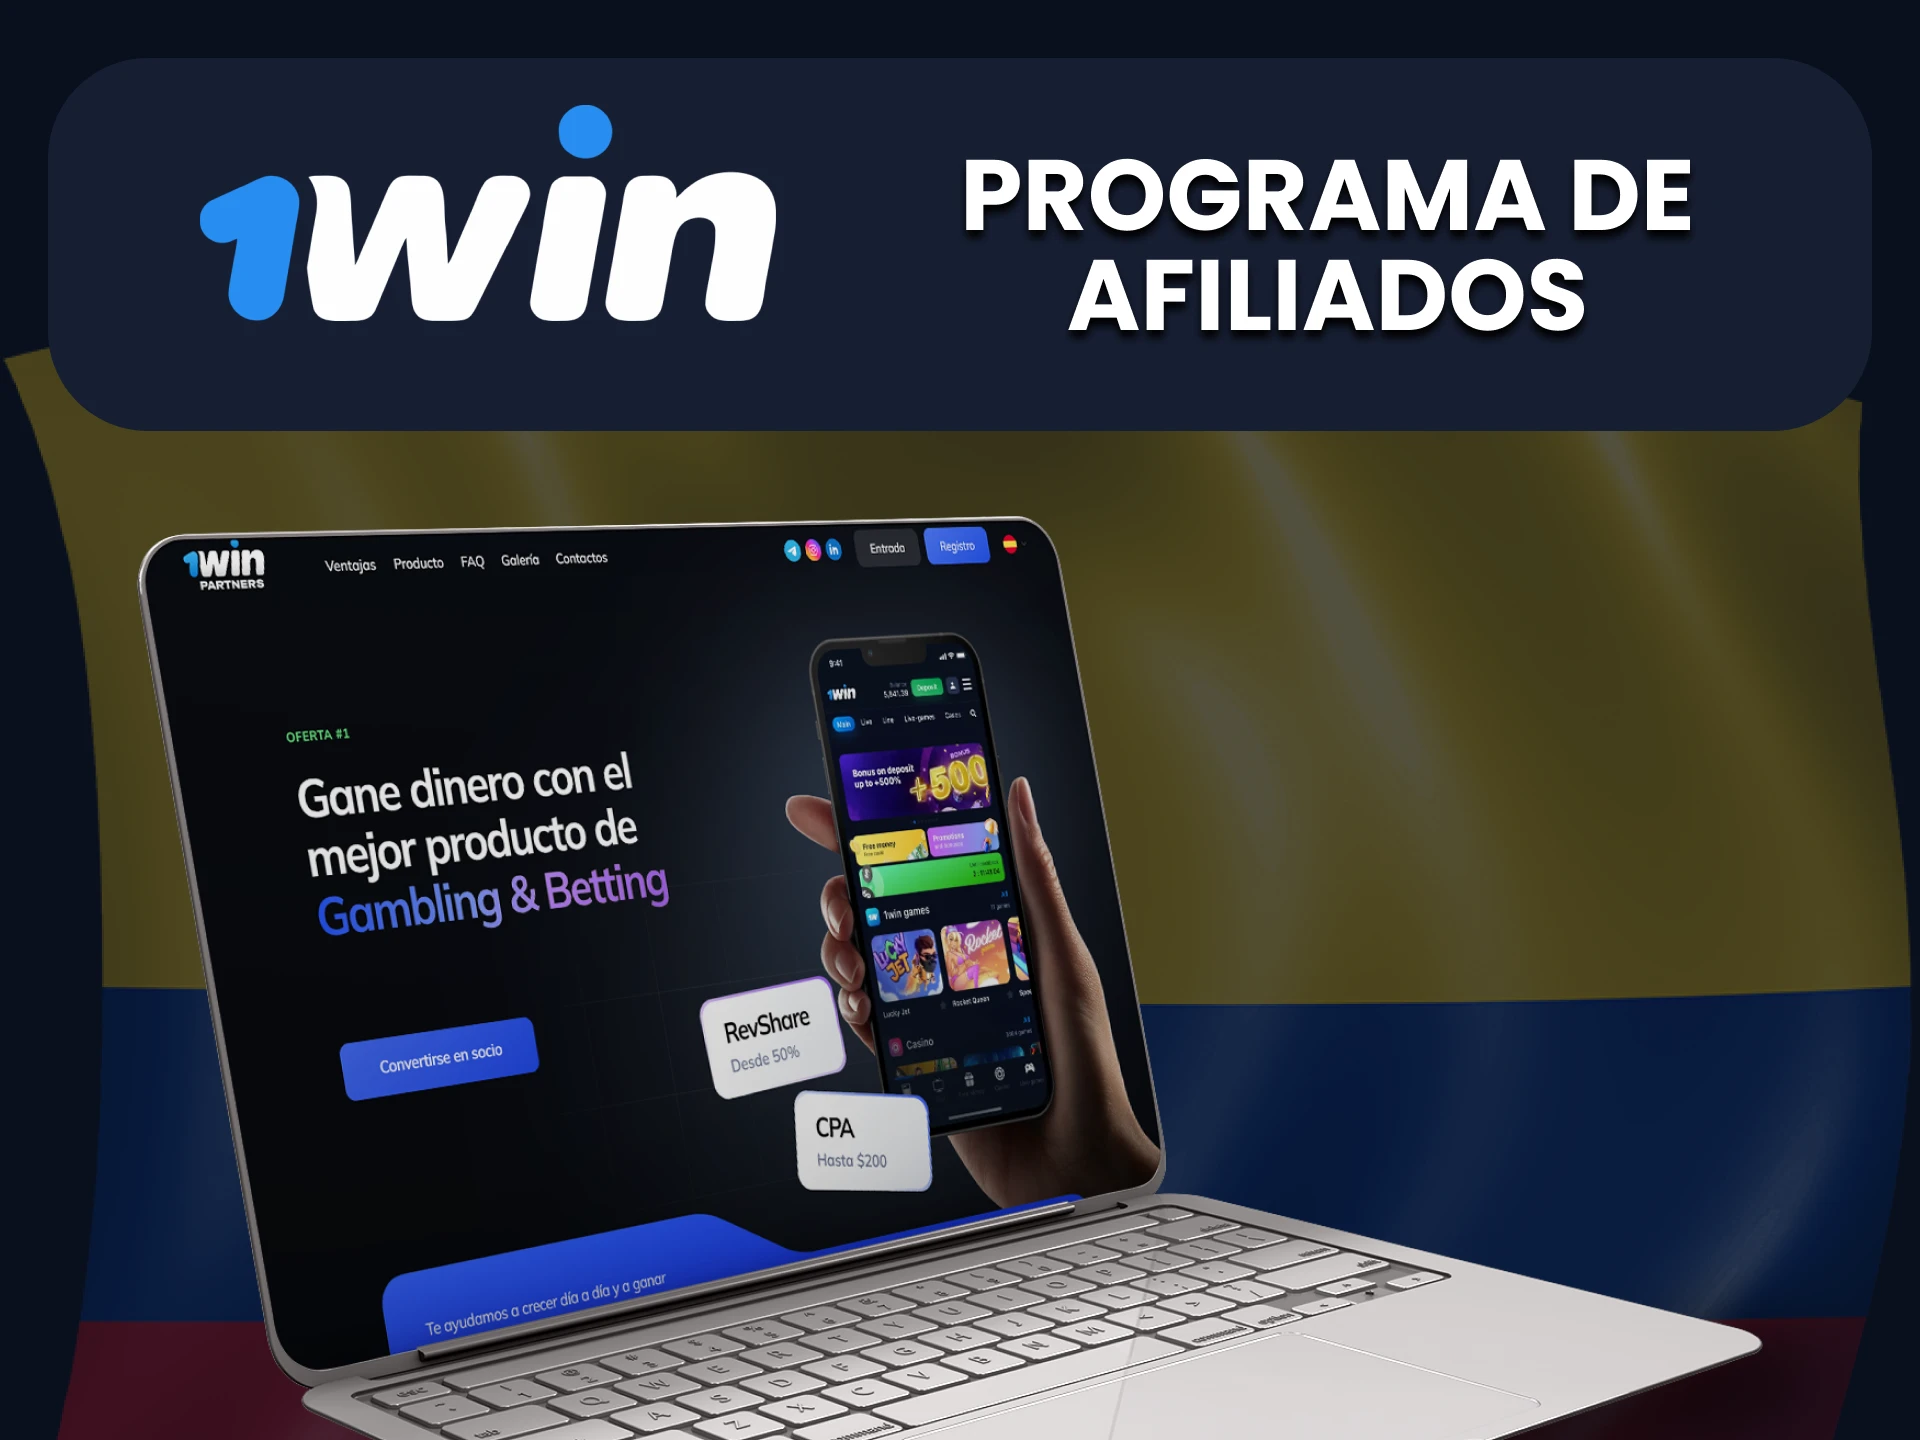 El sitio web 1win tiene un programa de afiliados.